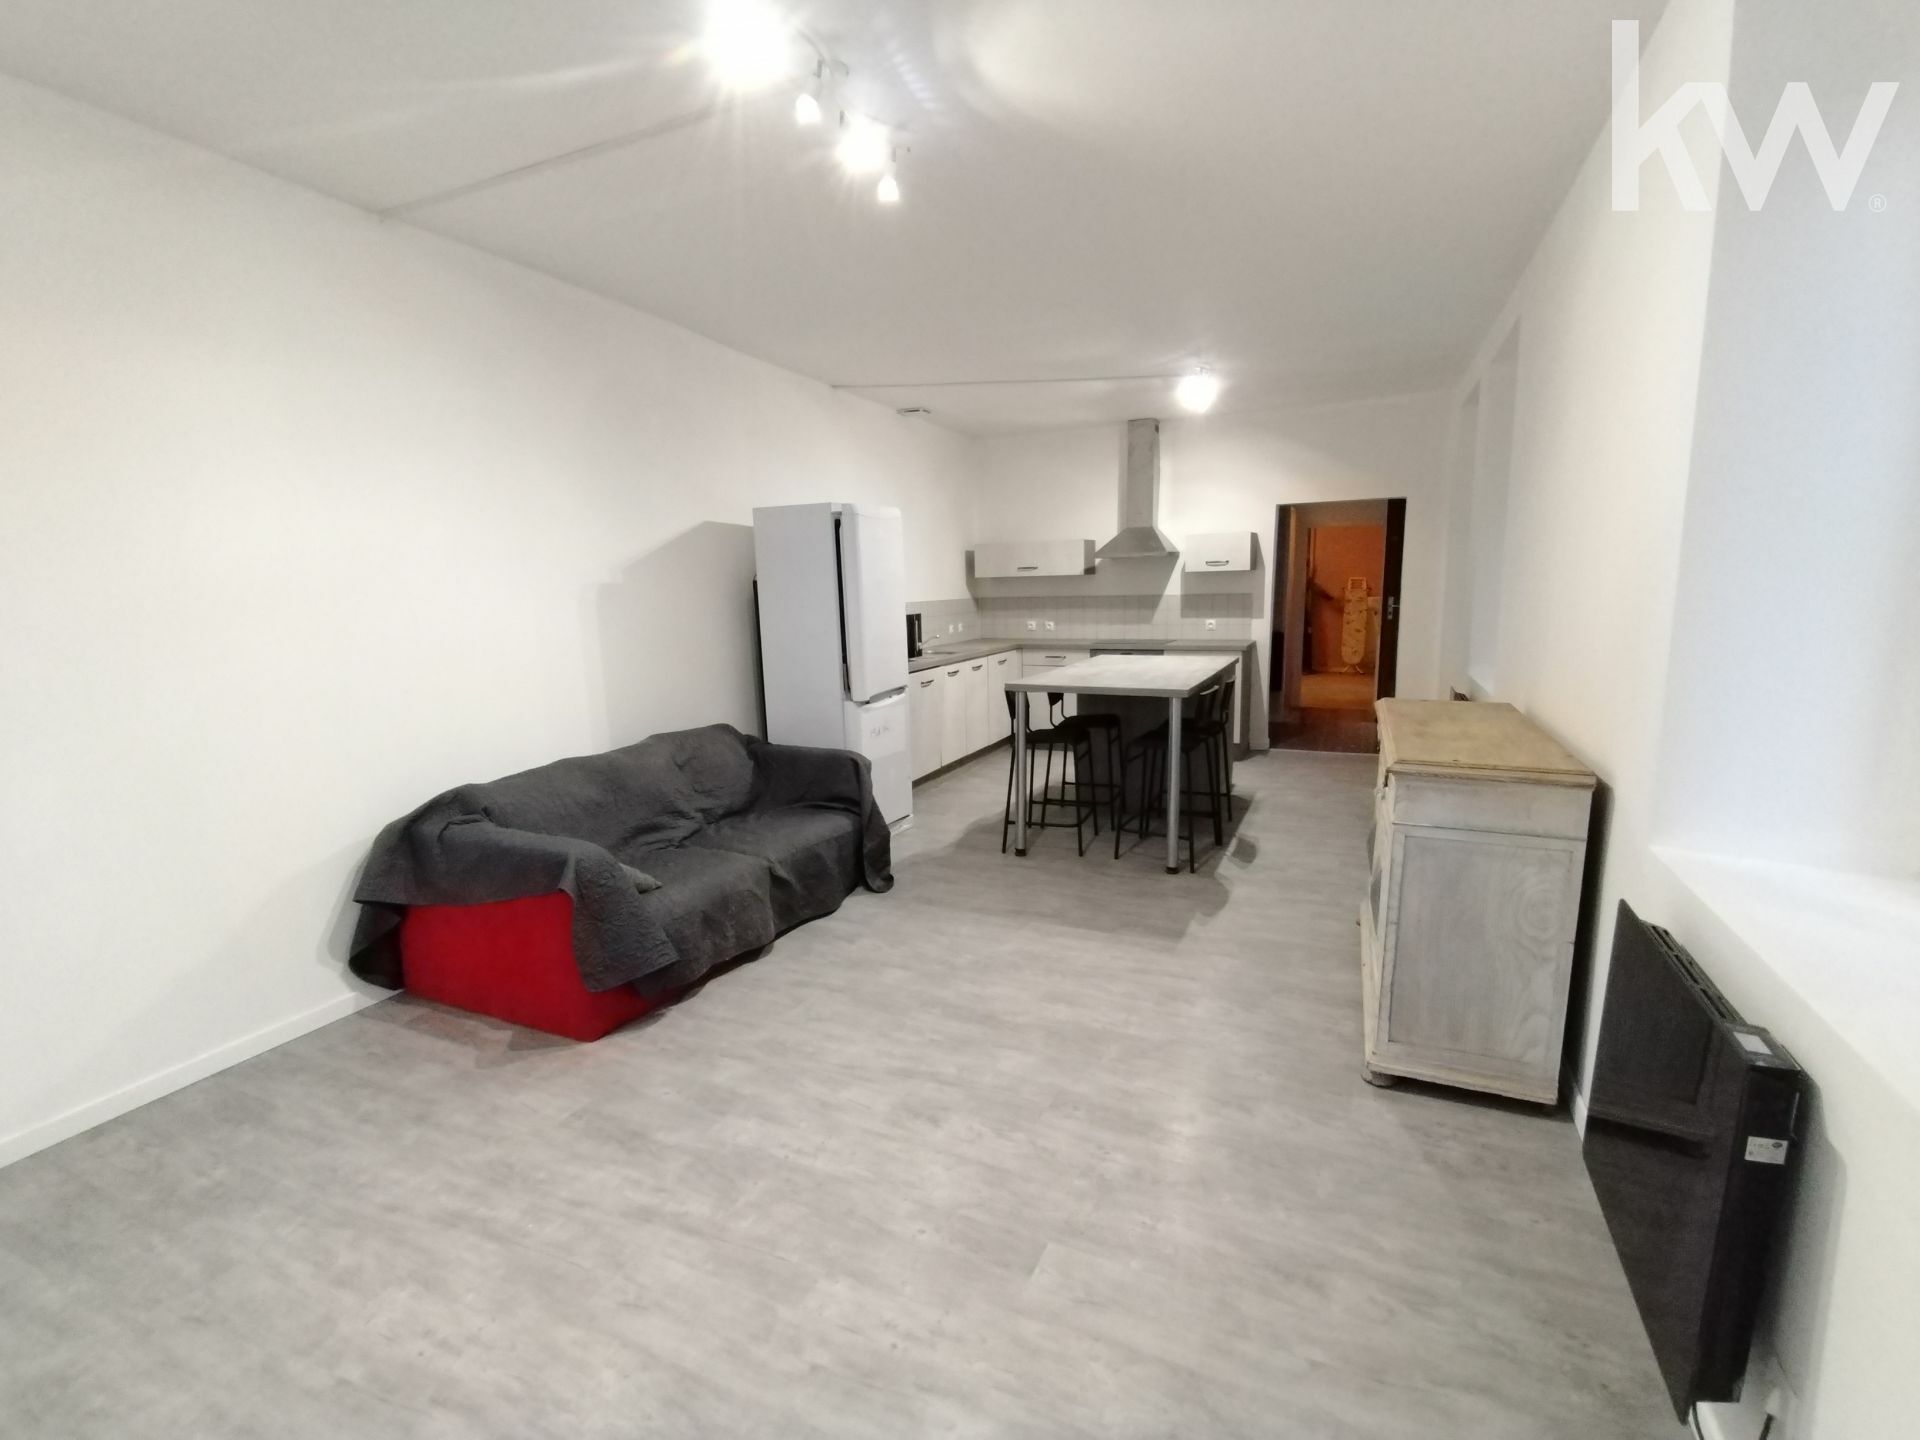 Location d'une maison F4 (110 m²) à LABASTIDE VILLEFRANCHE 